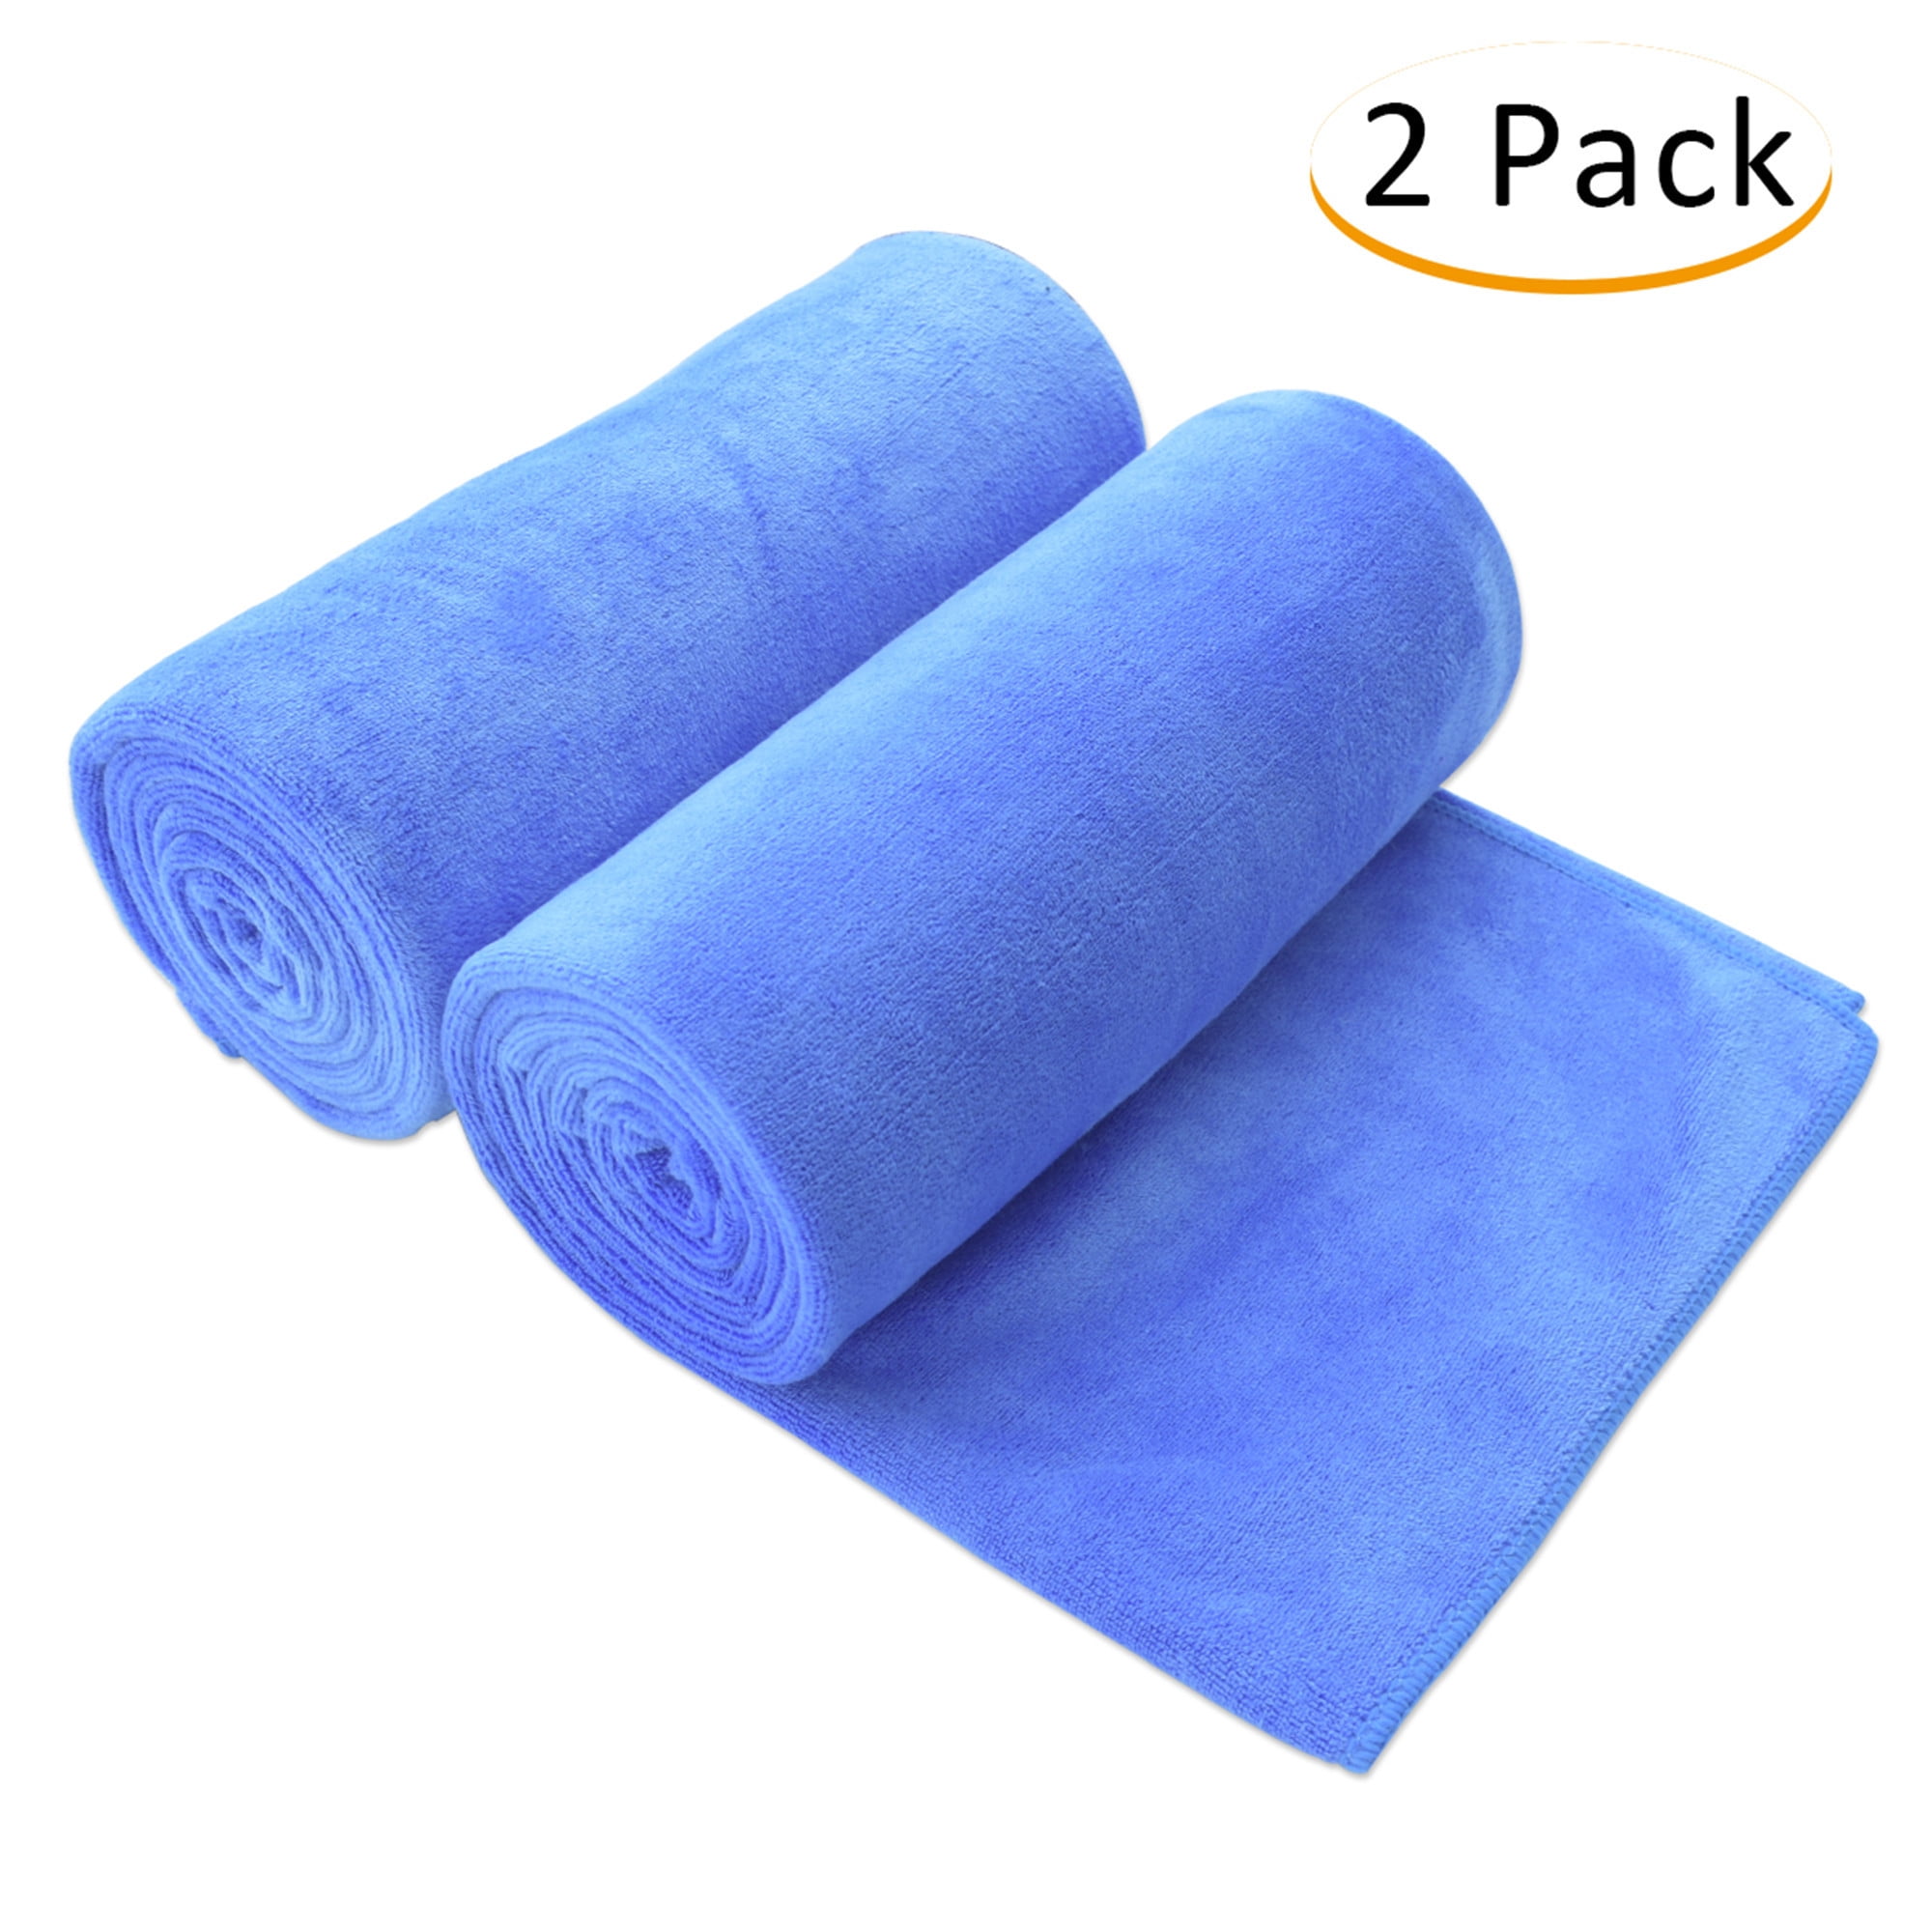 Bathroom Towels Microfiber Beach Towels Soft Absorbent Bath Towels Cloth B 